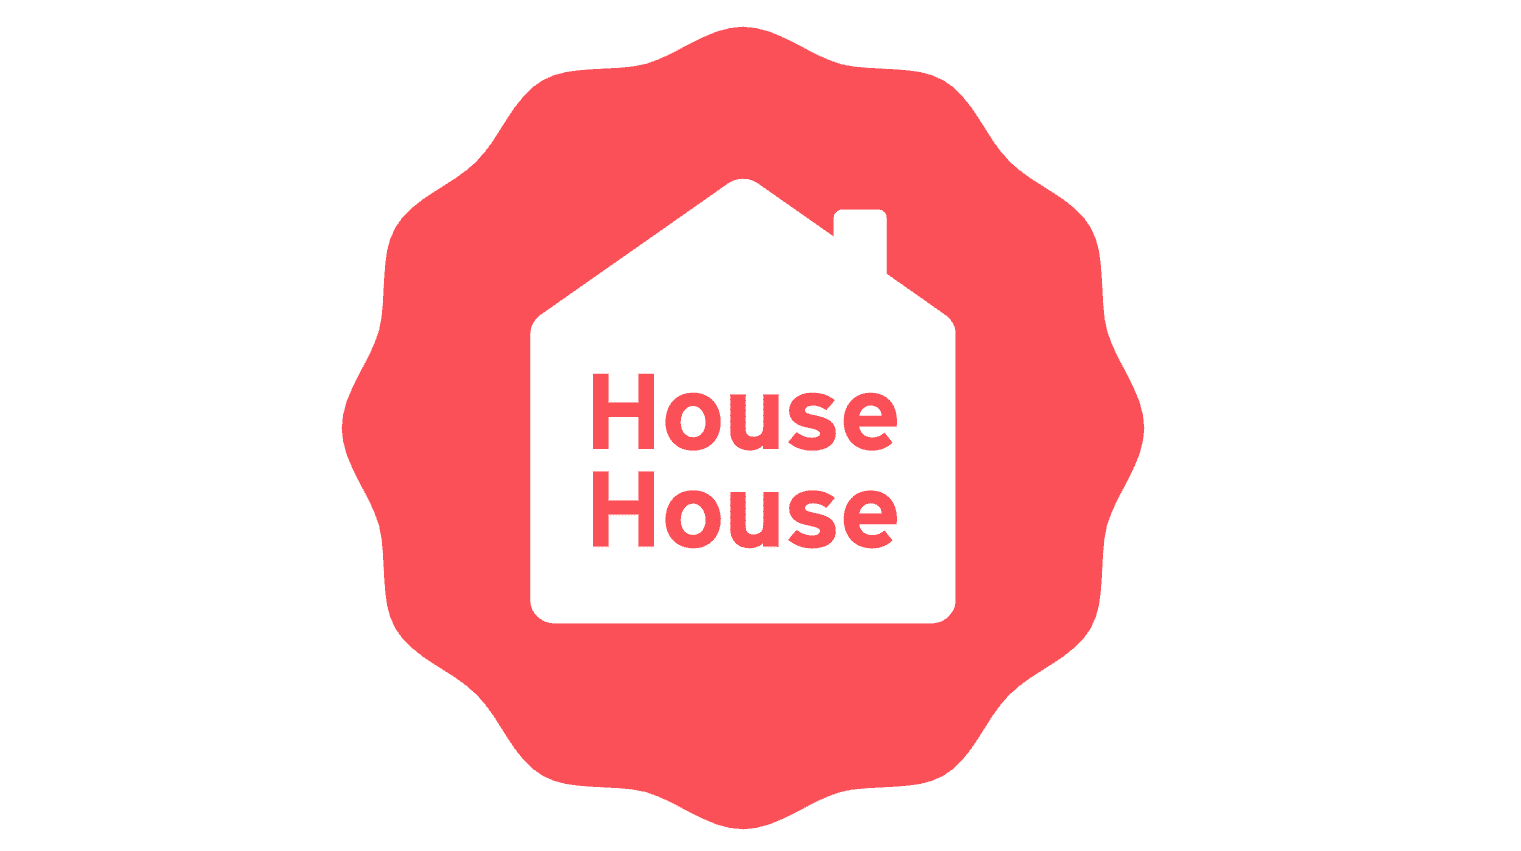 La desarrolladora House House, creadores de Untitled Goose Game, llevan a cabo donaciones para apoyar el movimiento Black Lives Matter